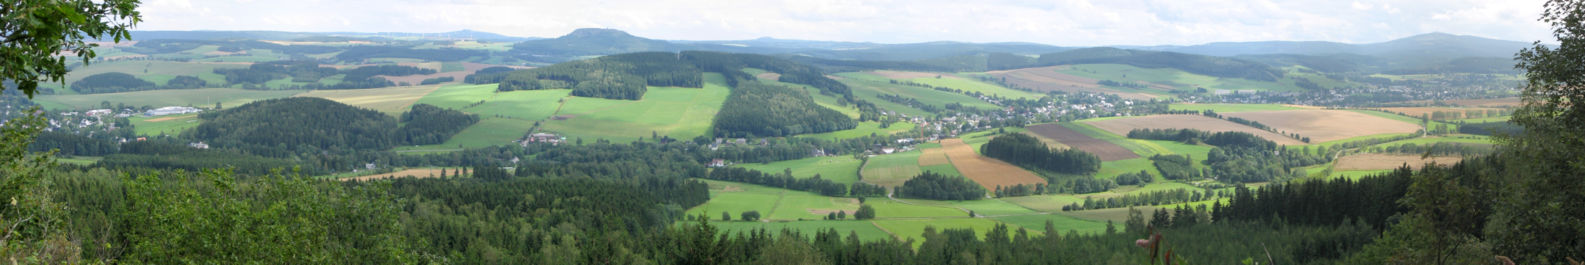 Panorama vom Scheibenberg (807 m ü. NN) Richtung Crottendorf mit Ortsteil Walthersdorf sowie Fichtelberg (1215 m ü. NN) und Bärenstein (897 m ü. NN). (von rechts)